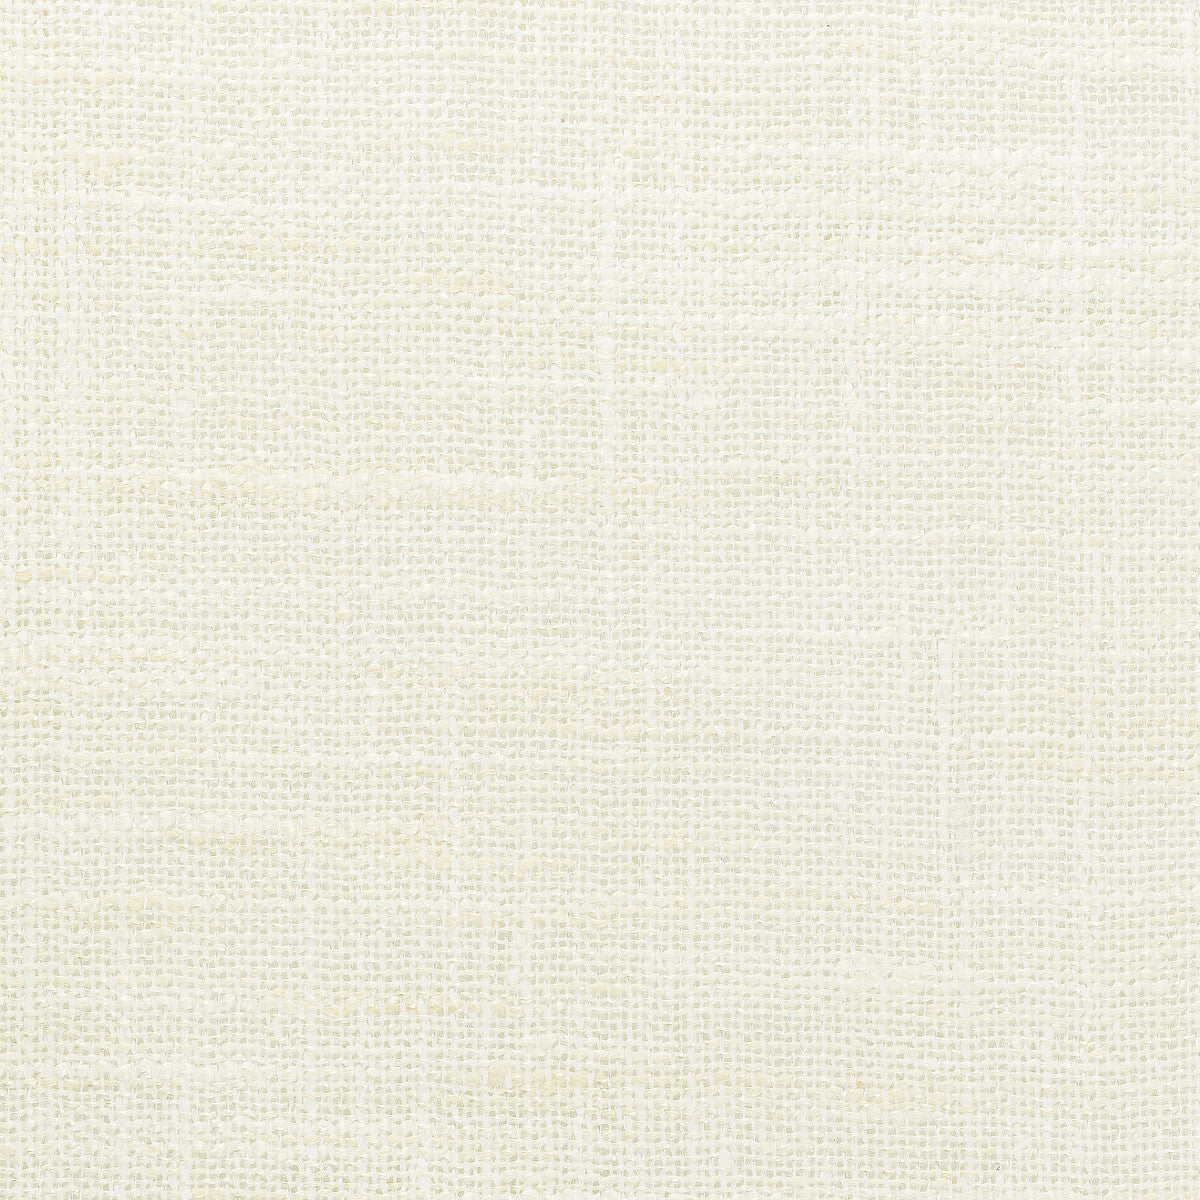 Kravet Basics fabric in 4853-1 color - pattern 4853.1.0 - by Kravet Basics